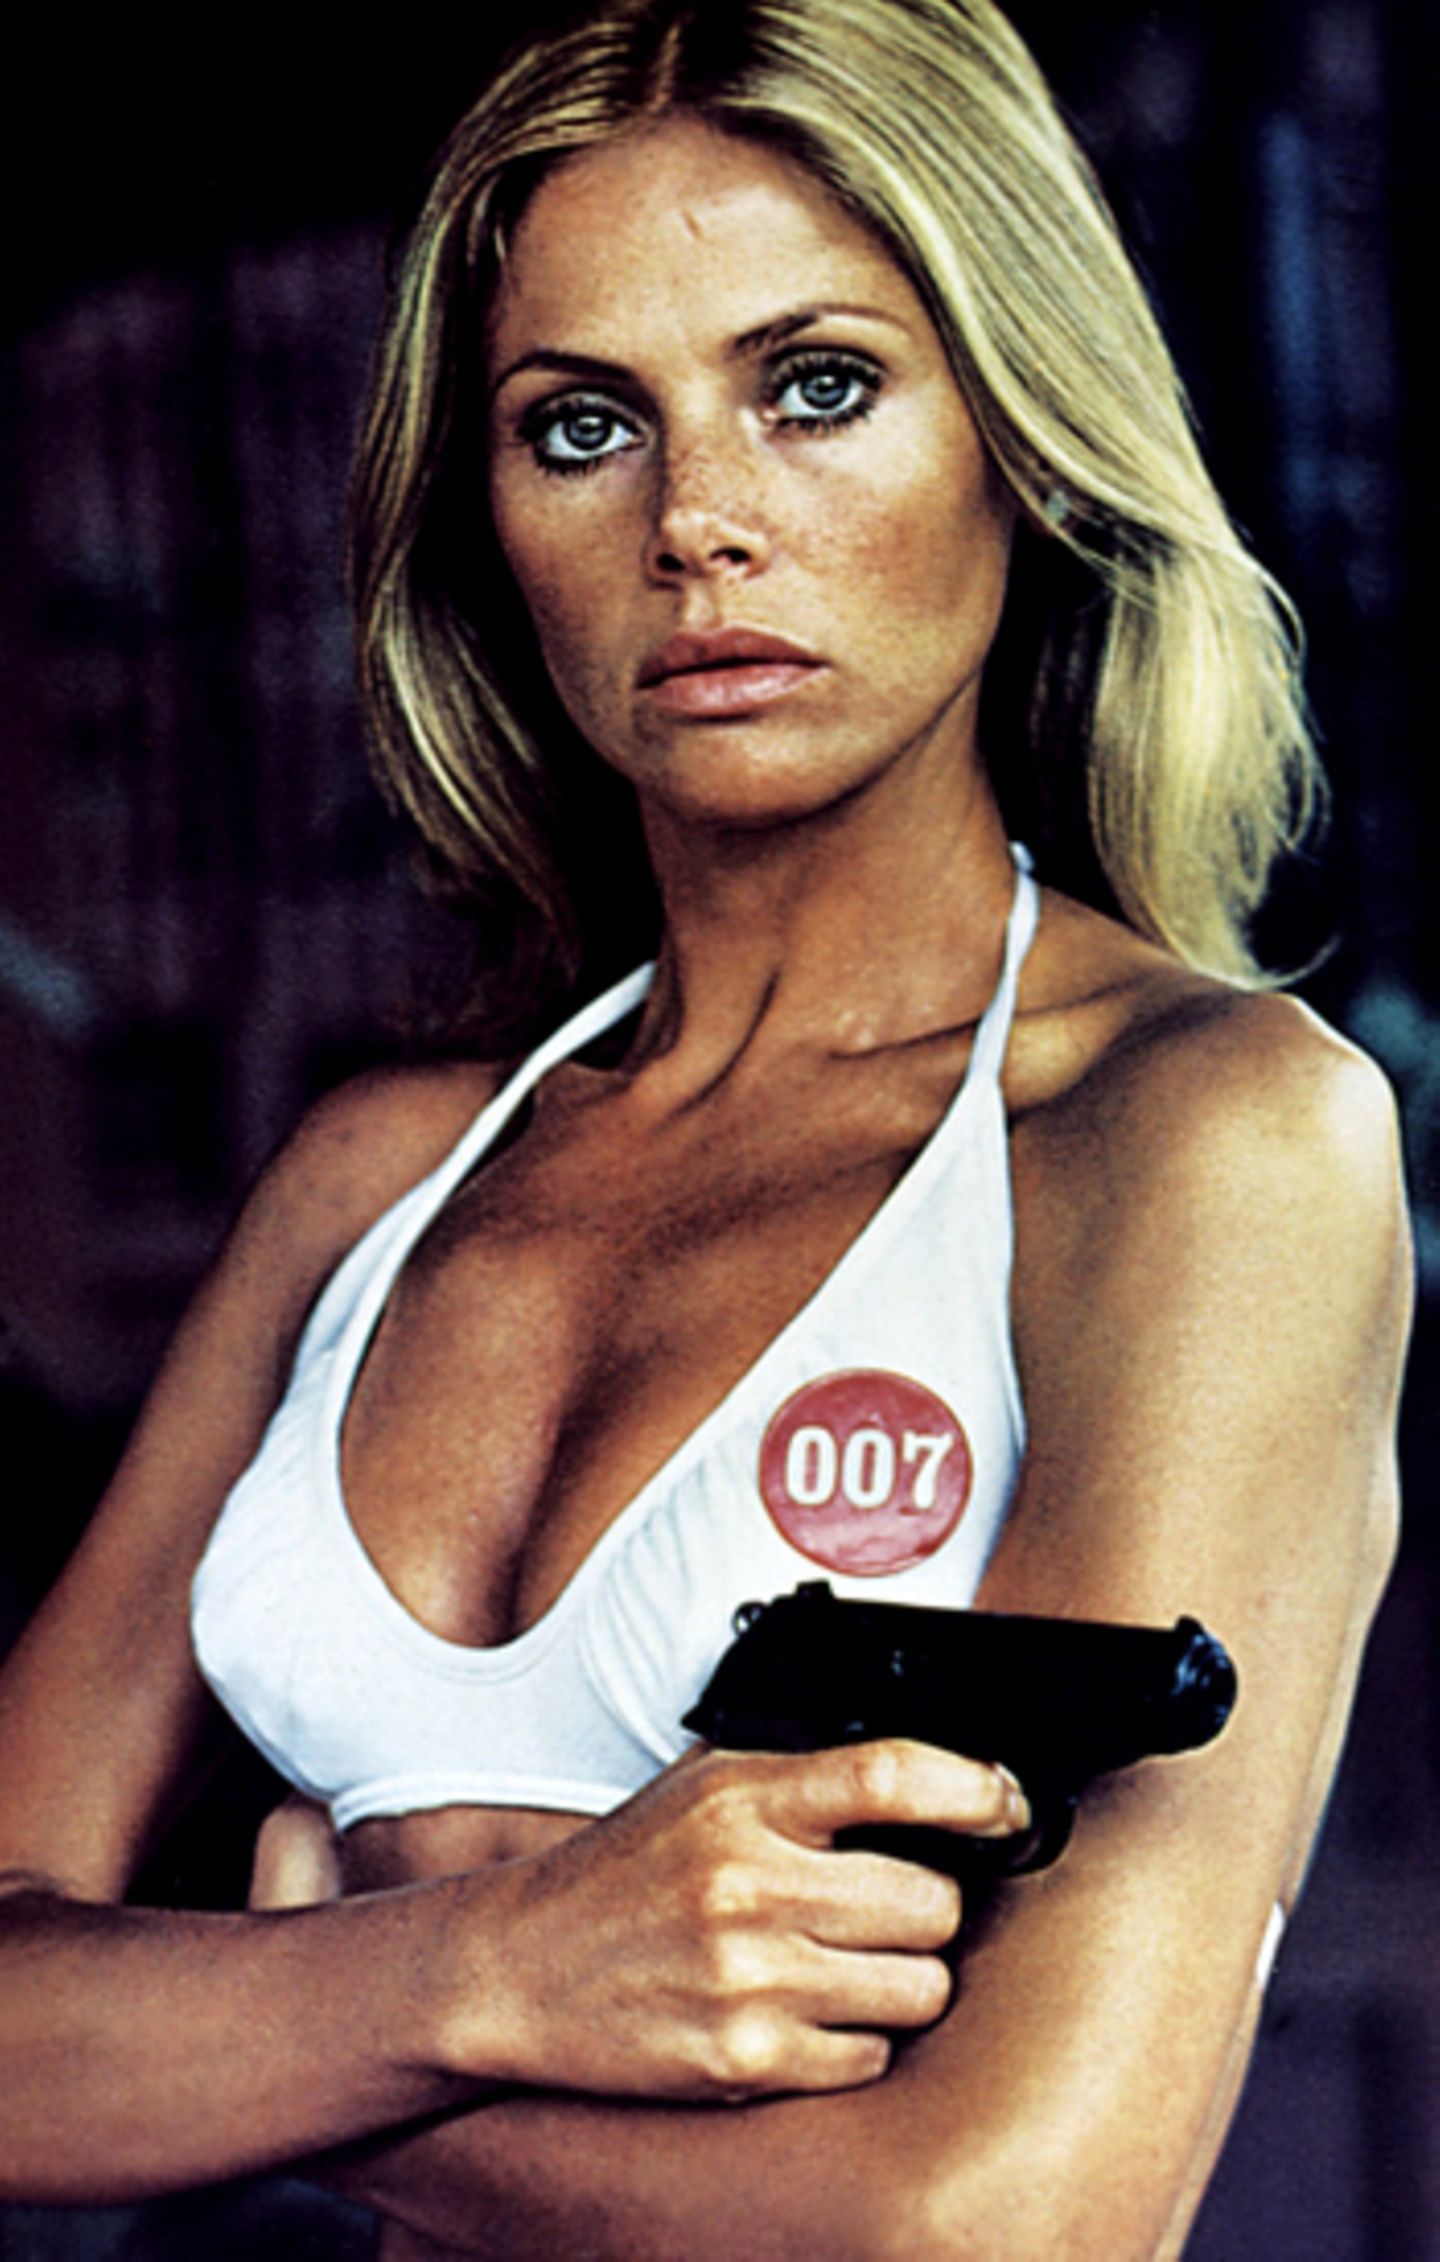 Bond Girls: Britt Ekland 1974 in "Der Mann mit dem goldenen Colt"